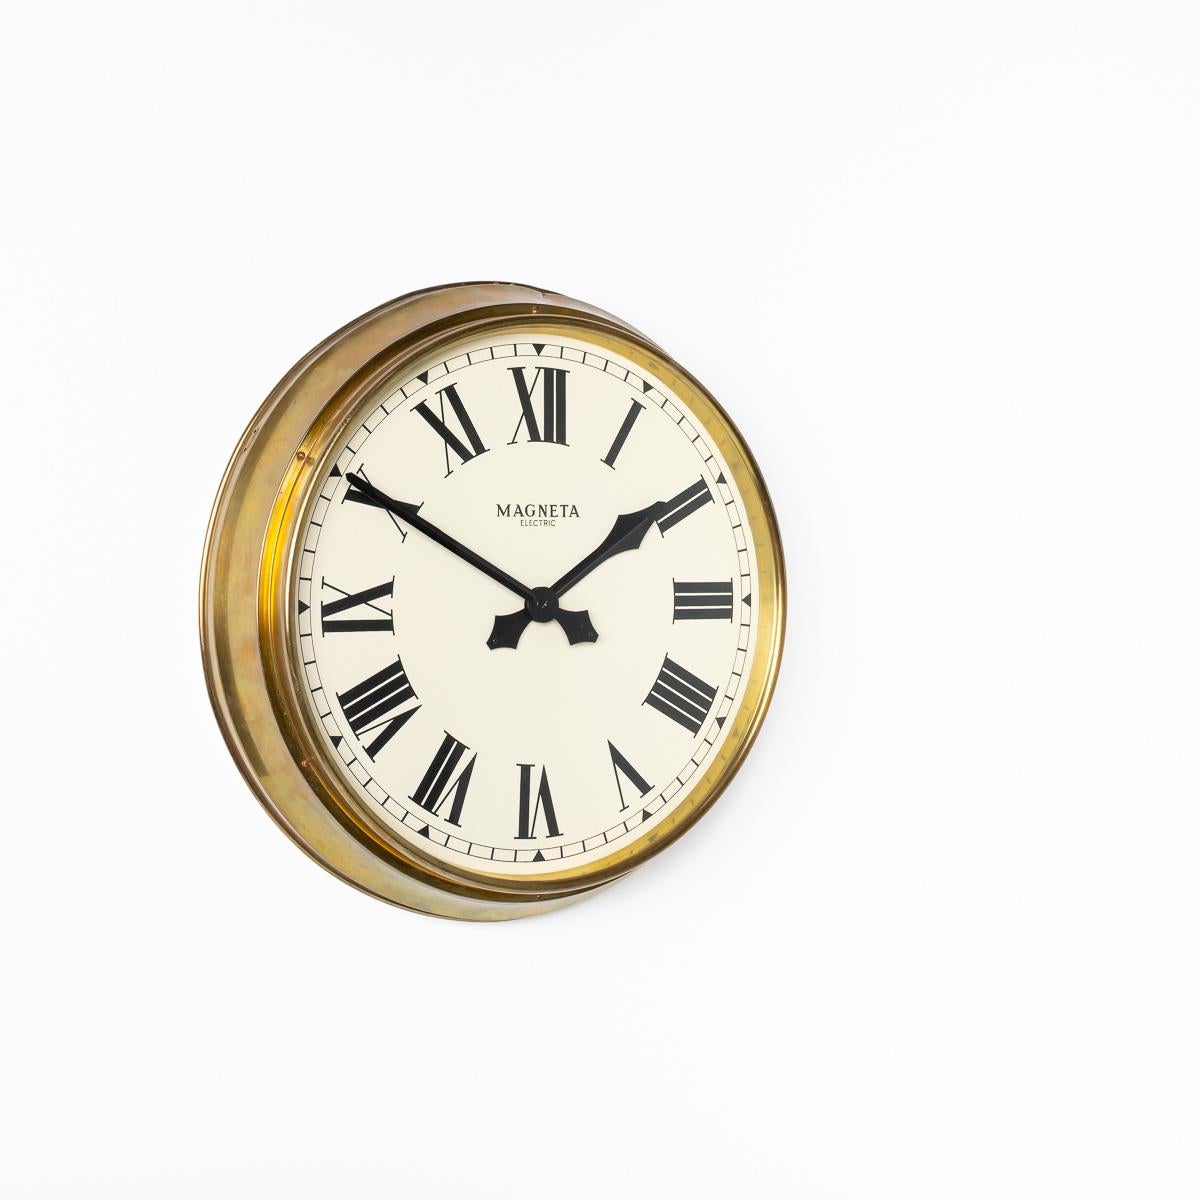 Industrial Large Diameter Vintage Brass British Factory Clock By Megneta